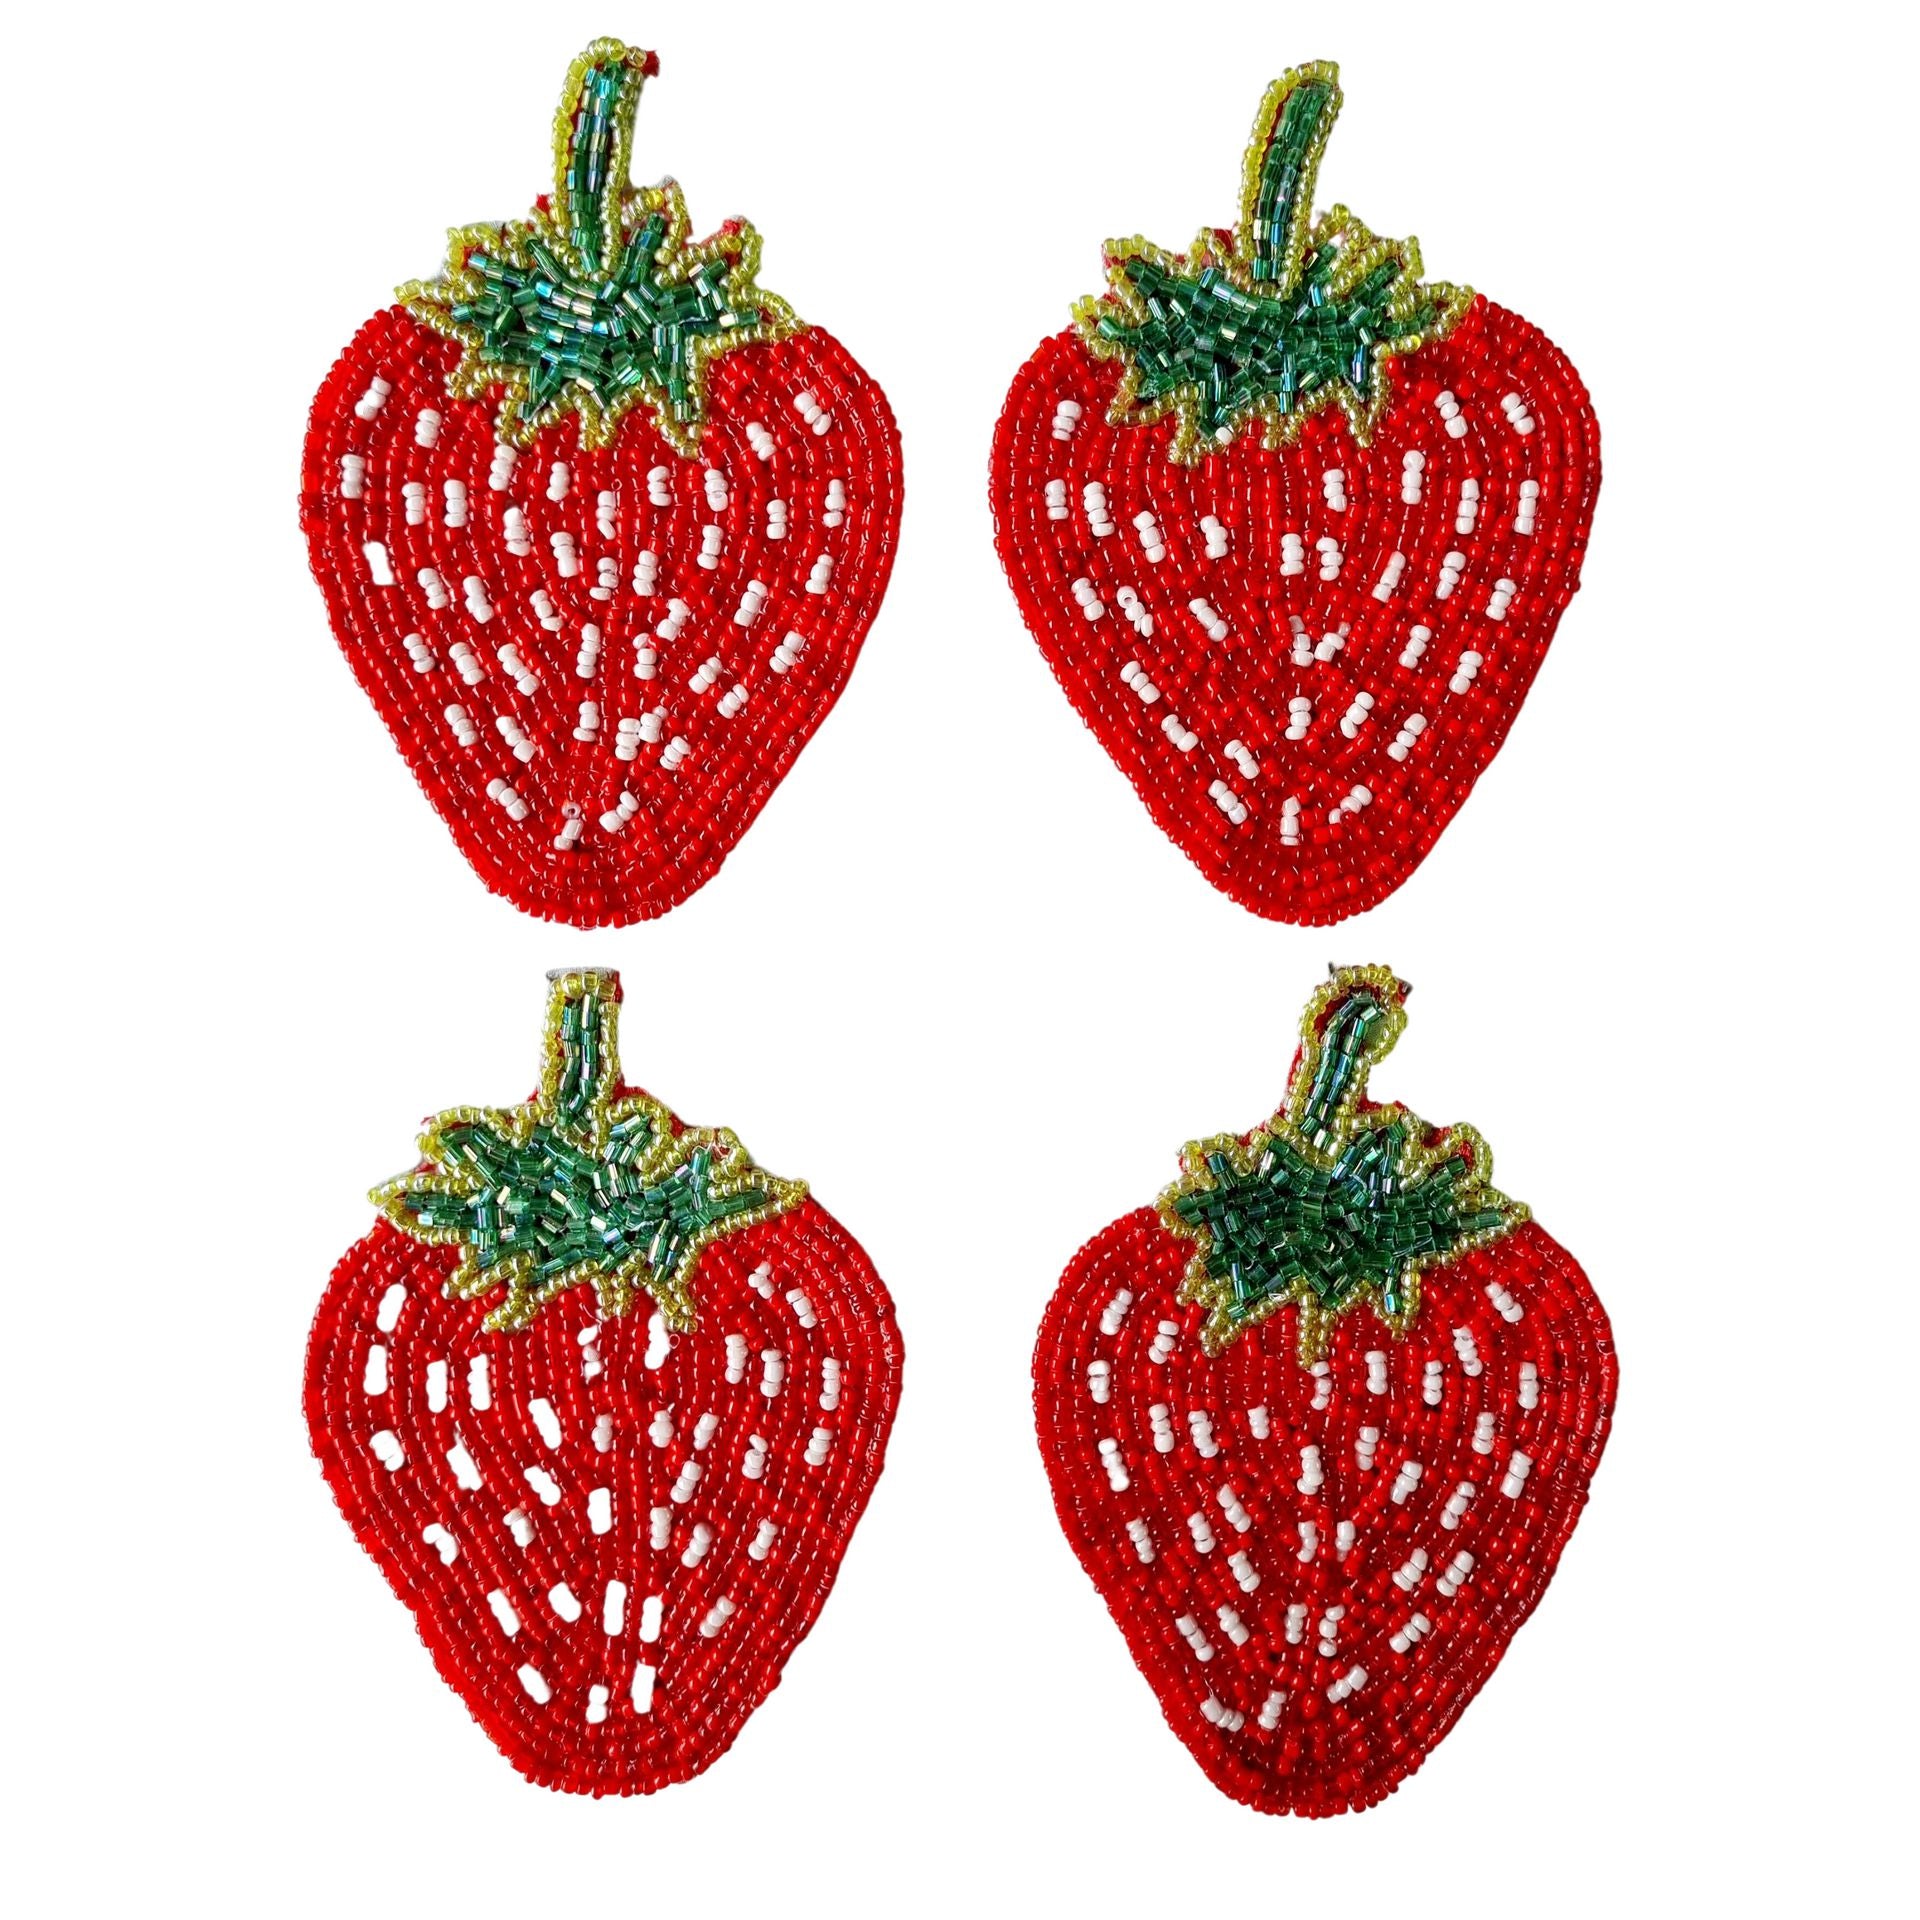 Beaded Coaster Set of 4 - Strawberry-Decor Items-Zoda-The Bay Room